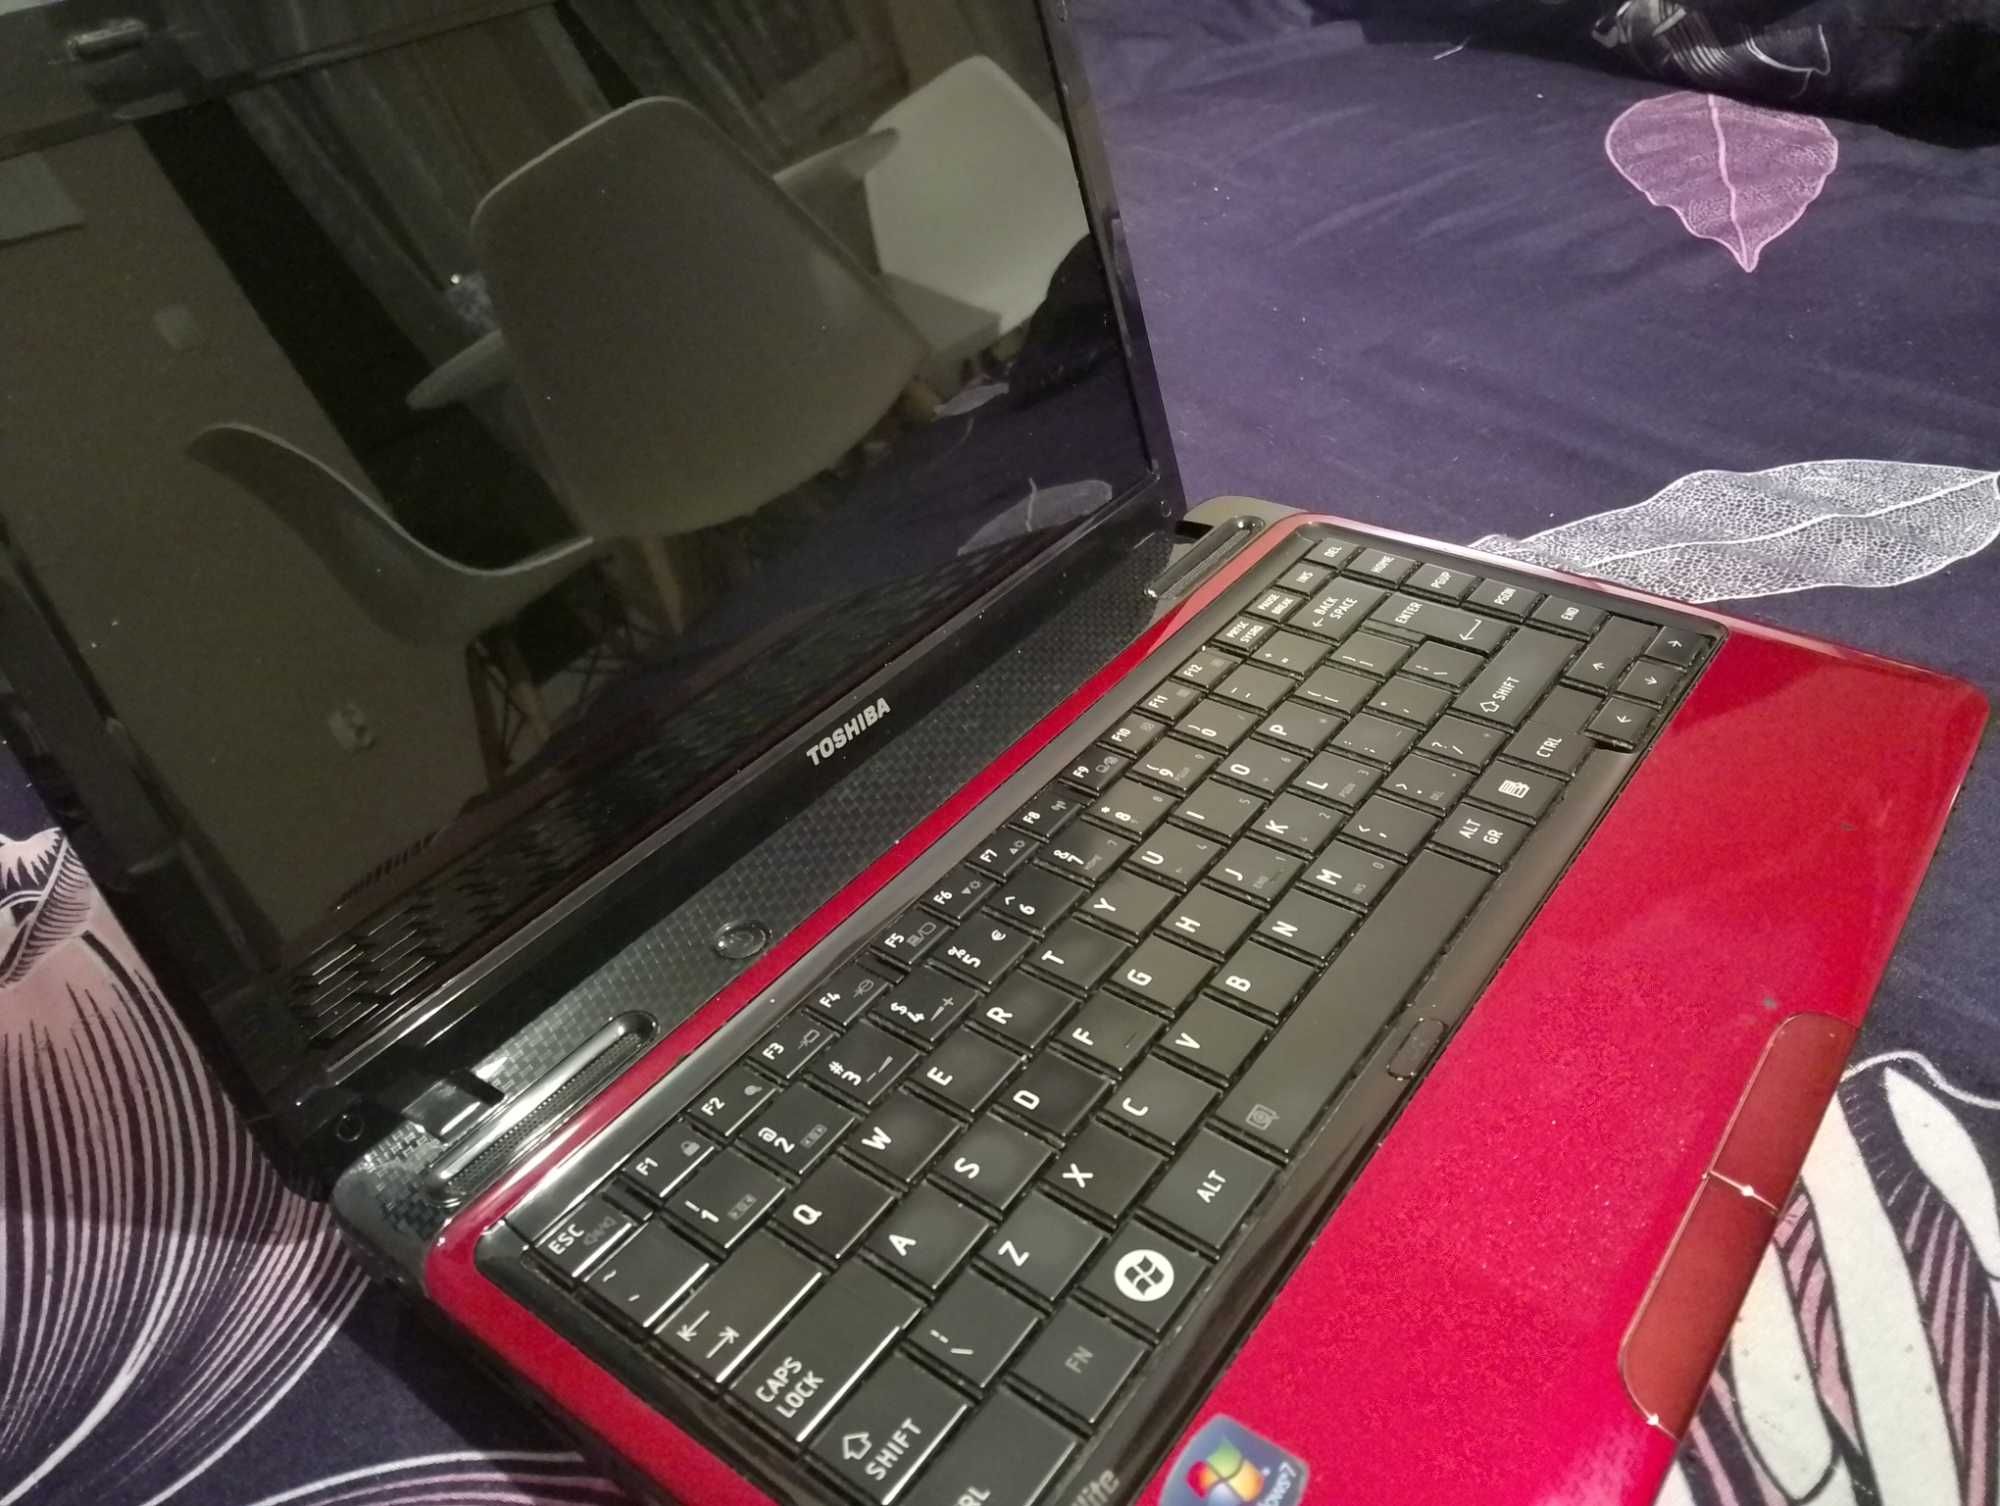 Toshiba L635 satellite laptop na części_niesprawny